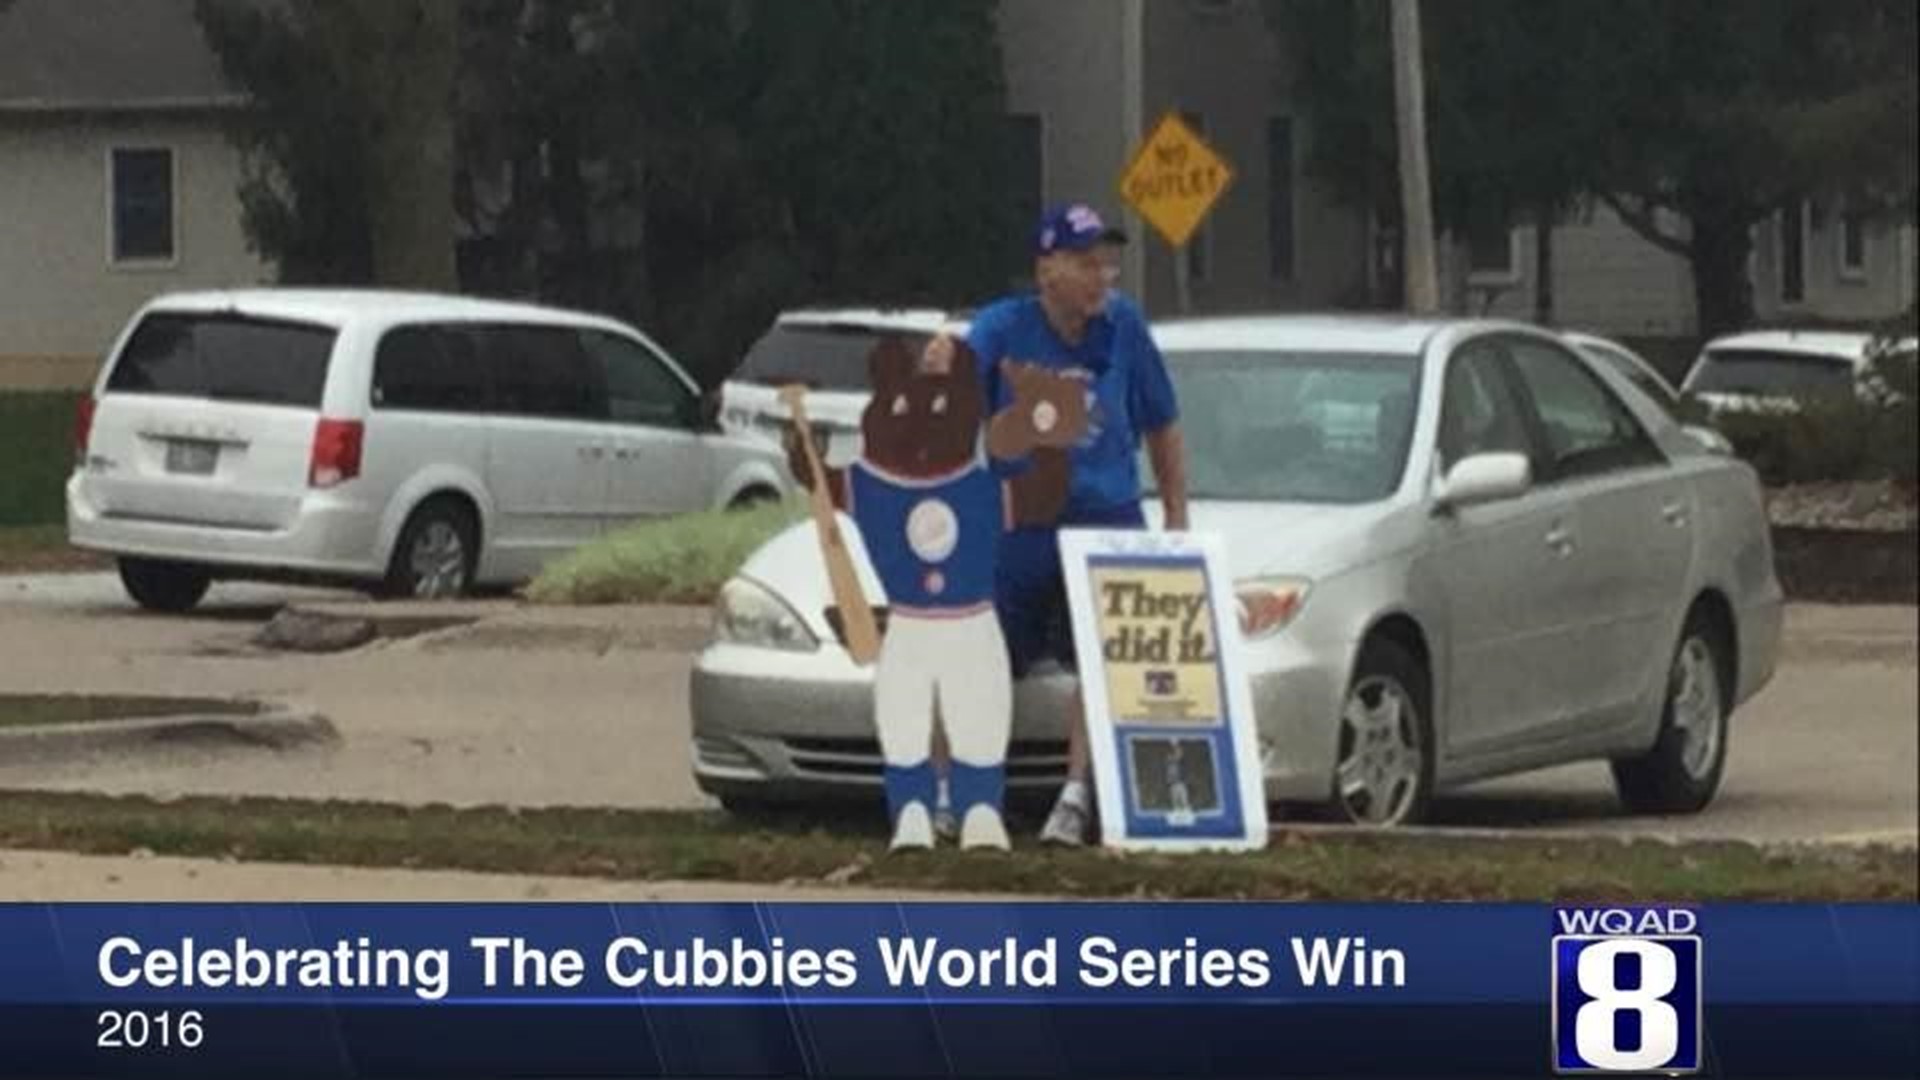 Cubs fan continues celebration